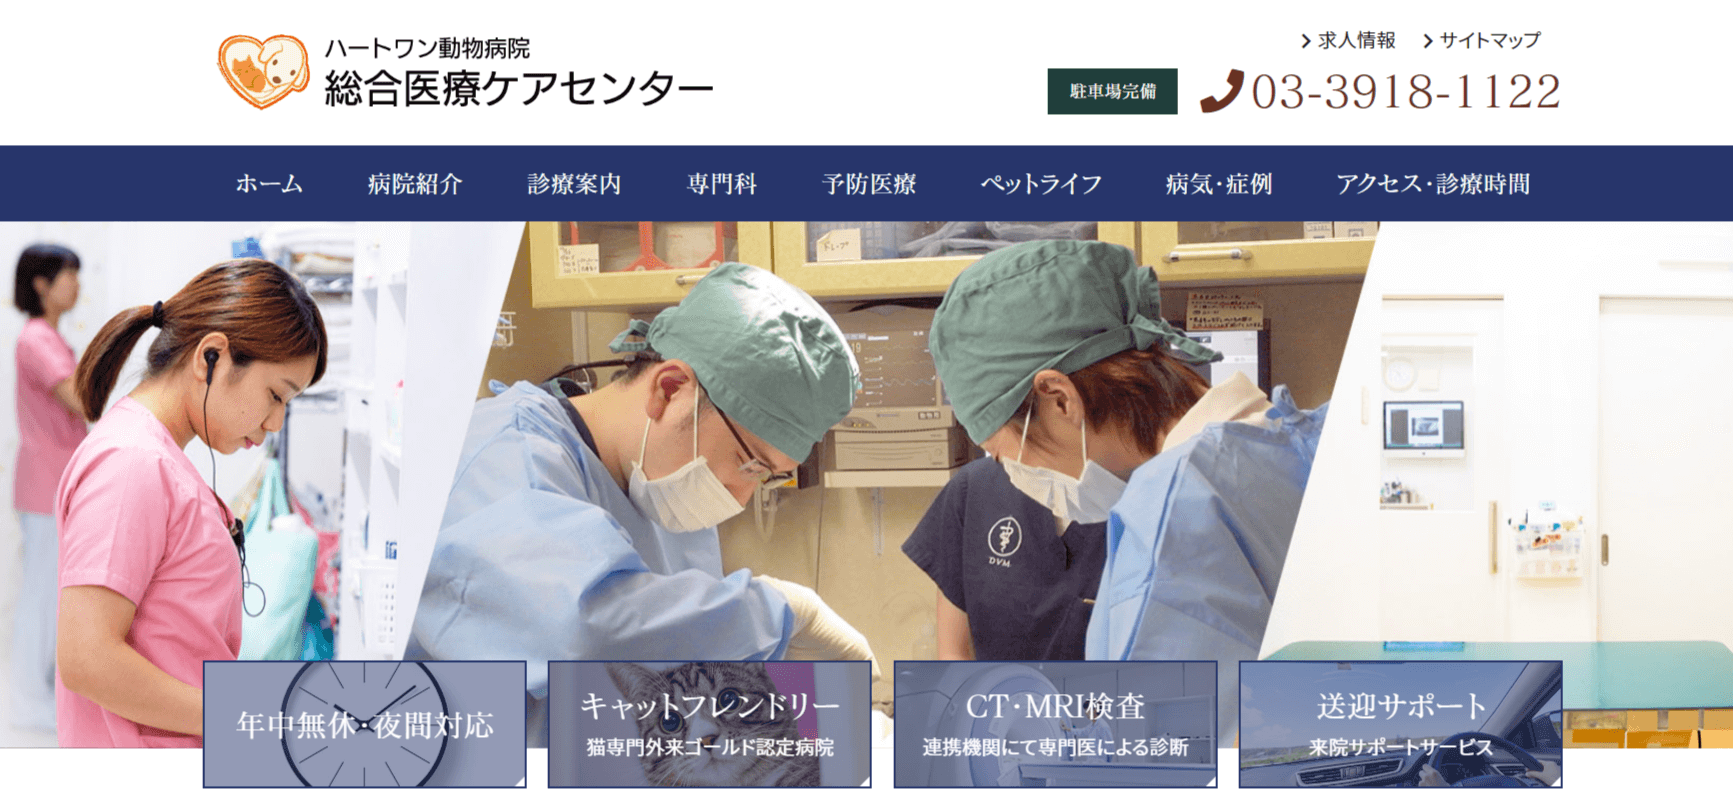 ハートワン動物病院のホームページ画像